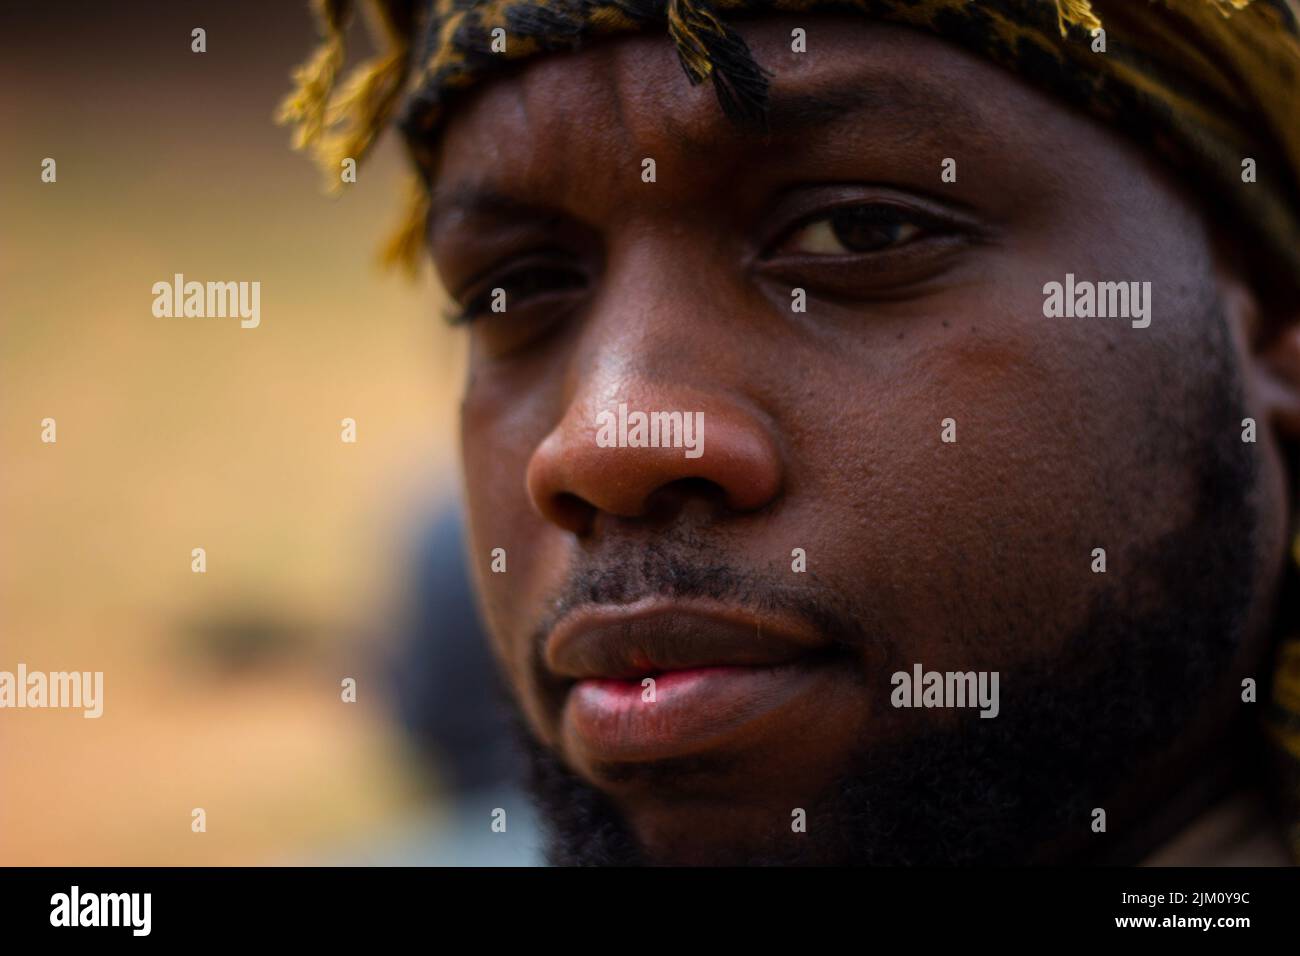 Un portrait d'un jeune homme afro-américain avec une expression faciale sérieuse Banque D'Images